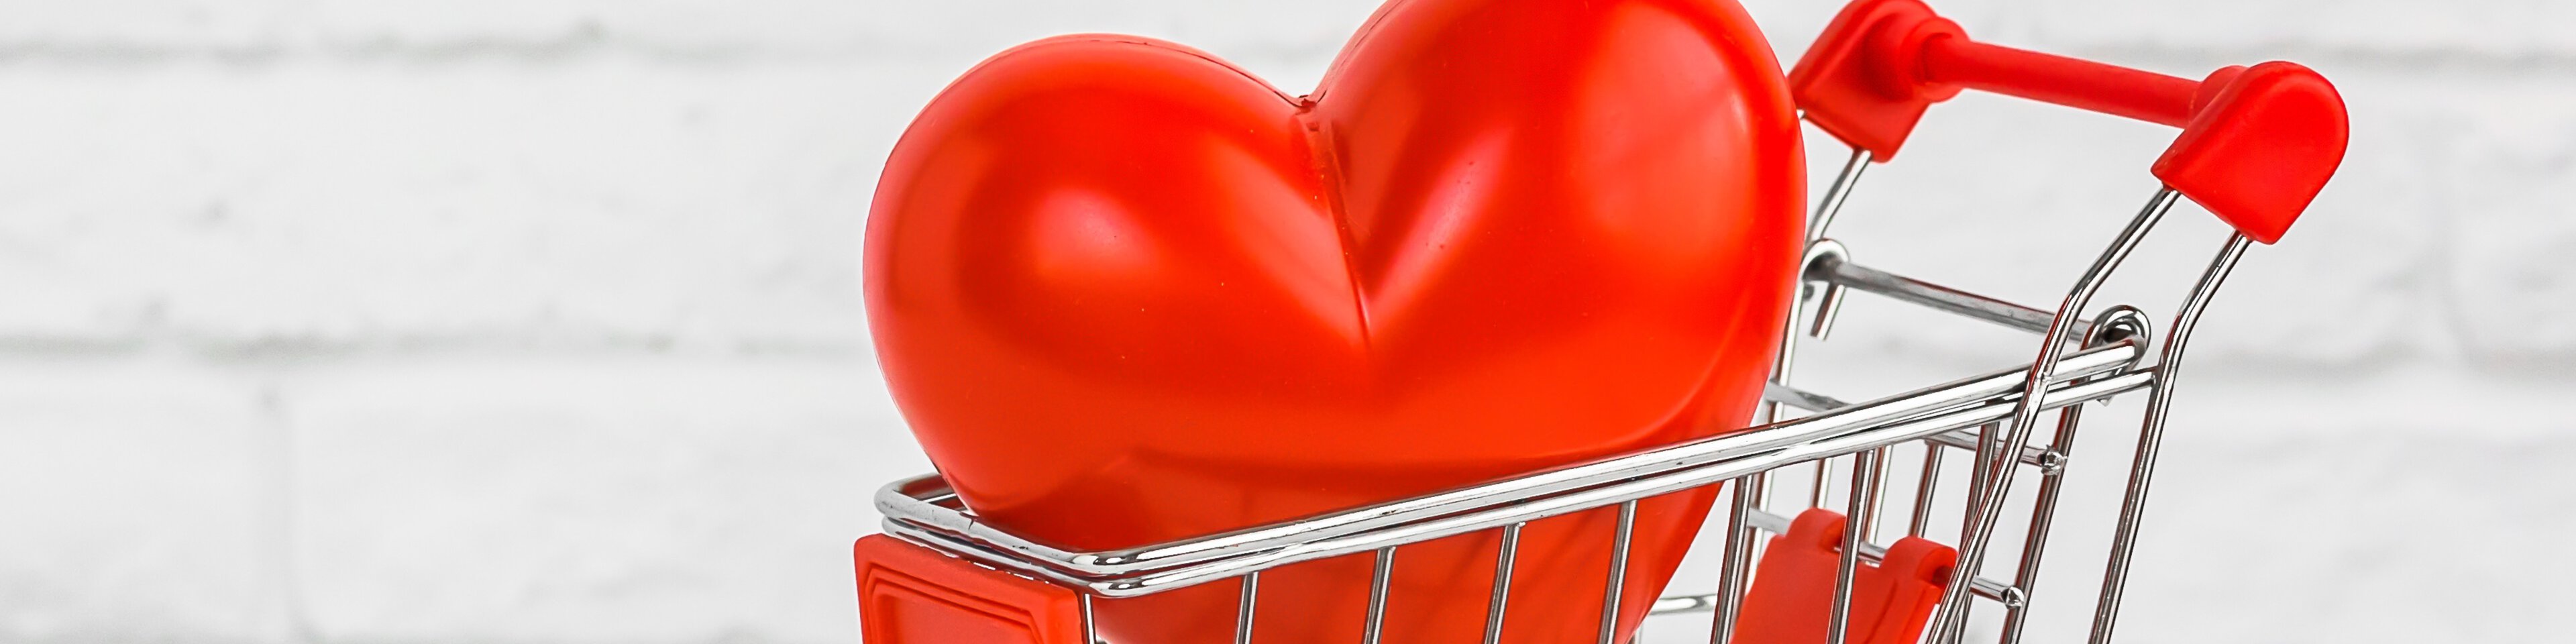 Herzluftballon in Einkaufswagen | © Pachaileknettip - Adobestock